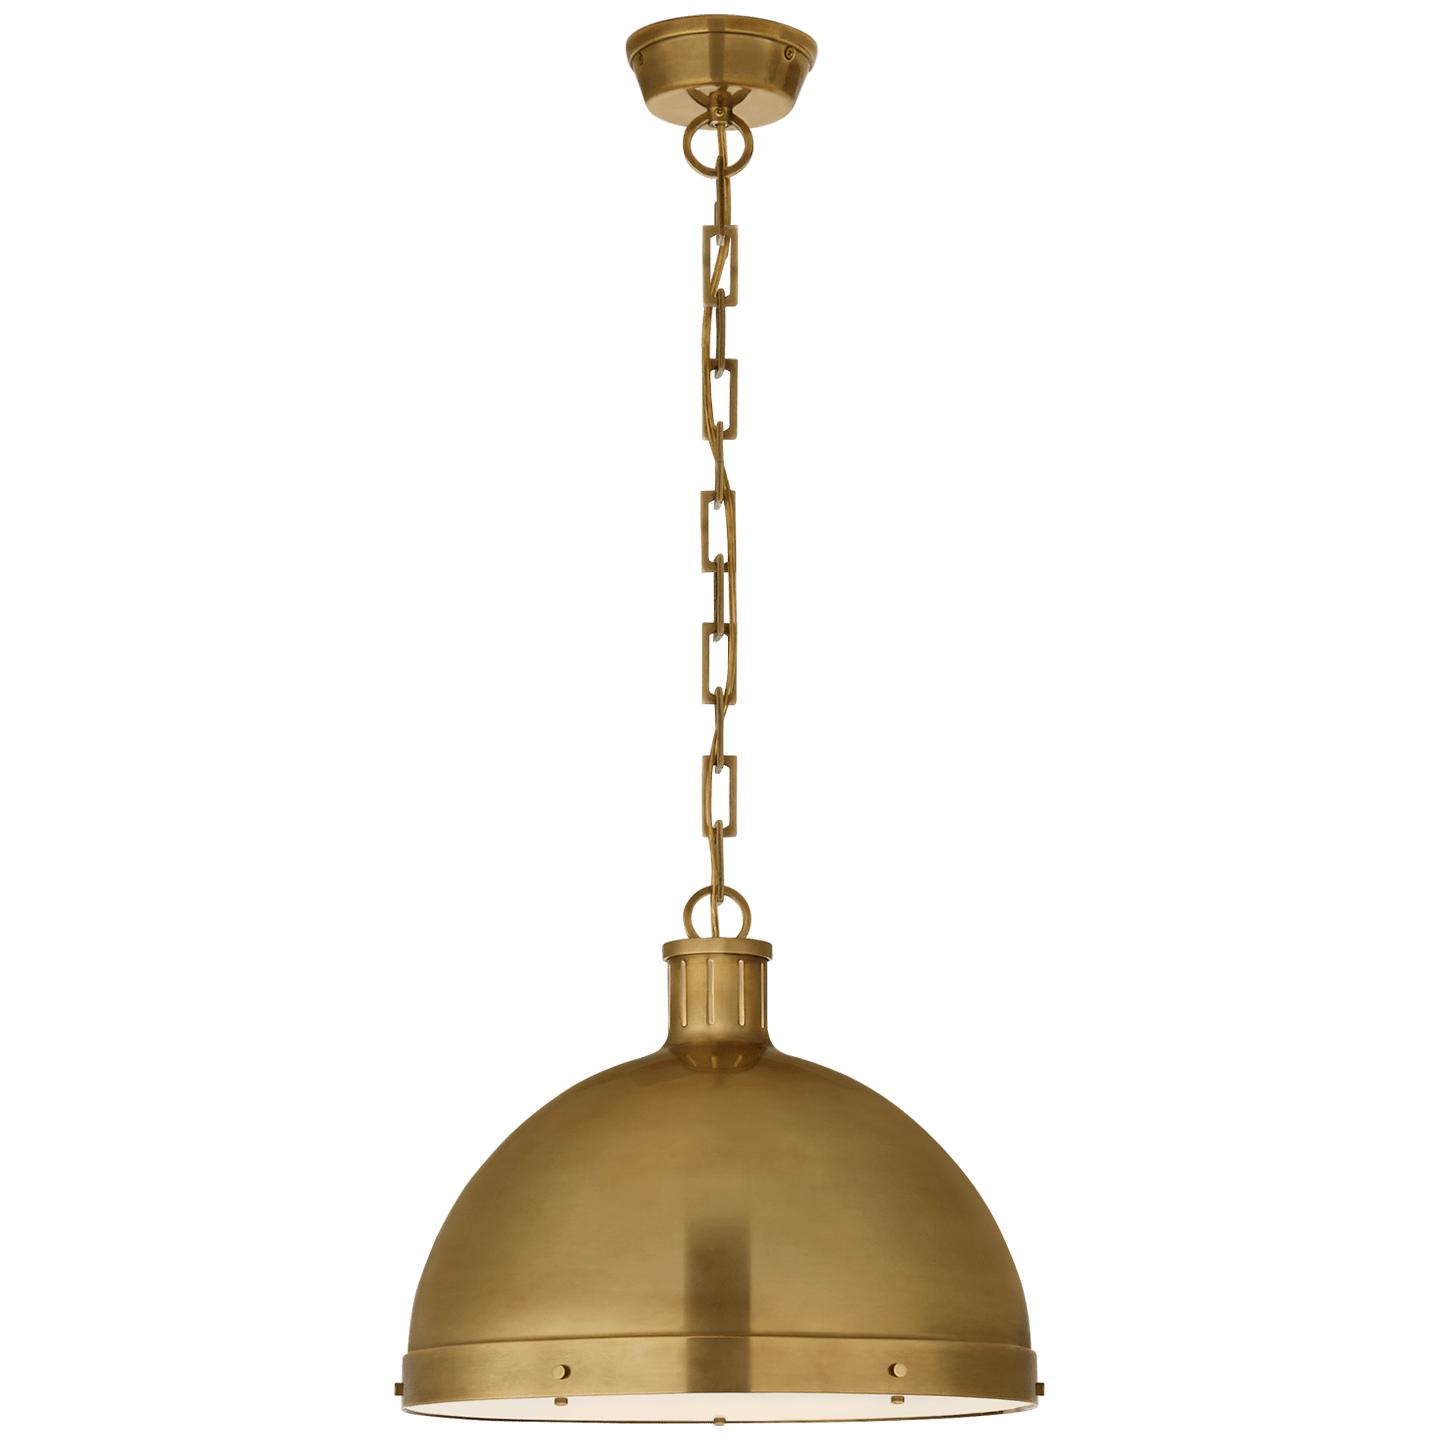 Купить Подвесной светильник Hicks Extra Large Pendant в интернет-магазине roooms.ru